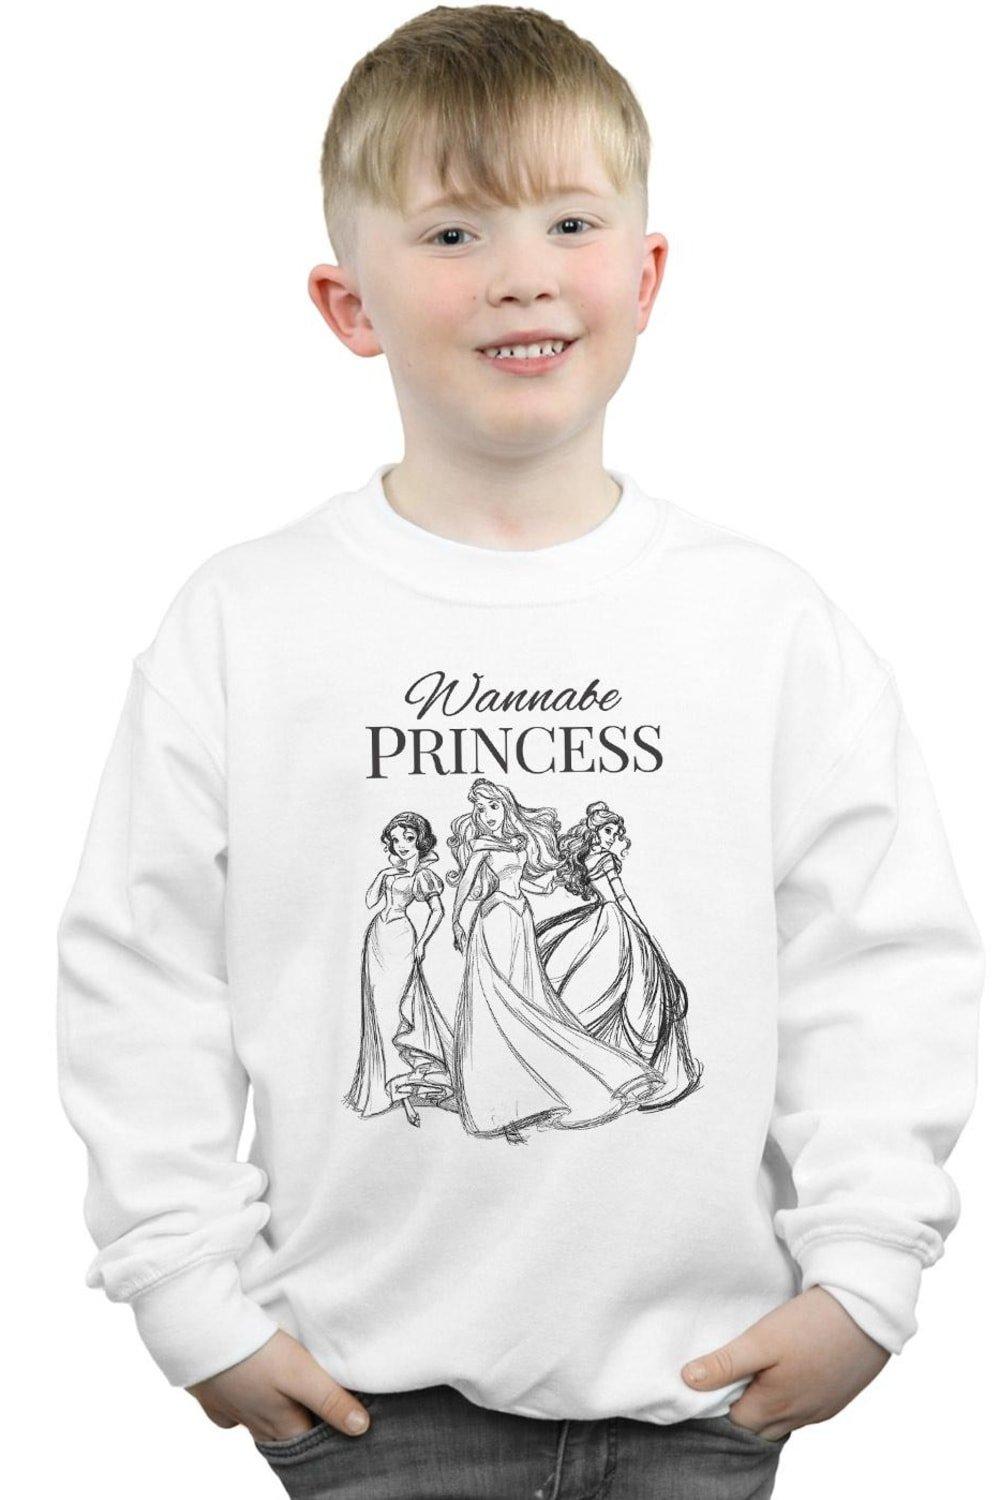 Wannabe Princess Sweatshirt